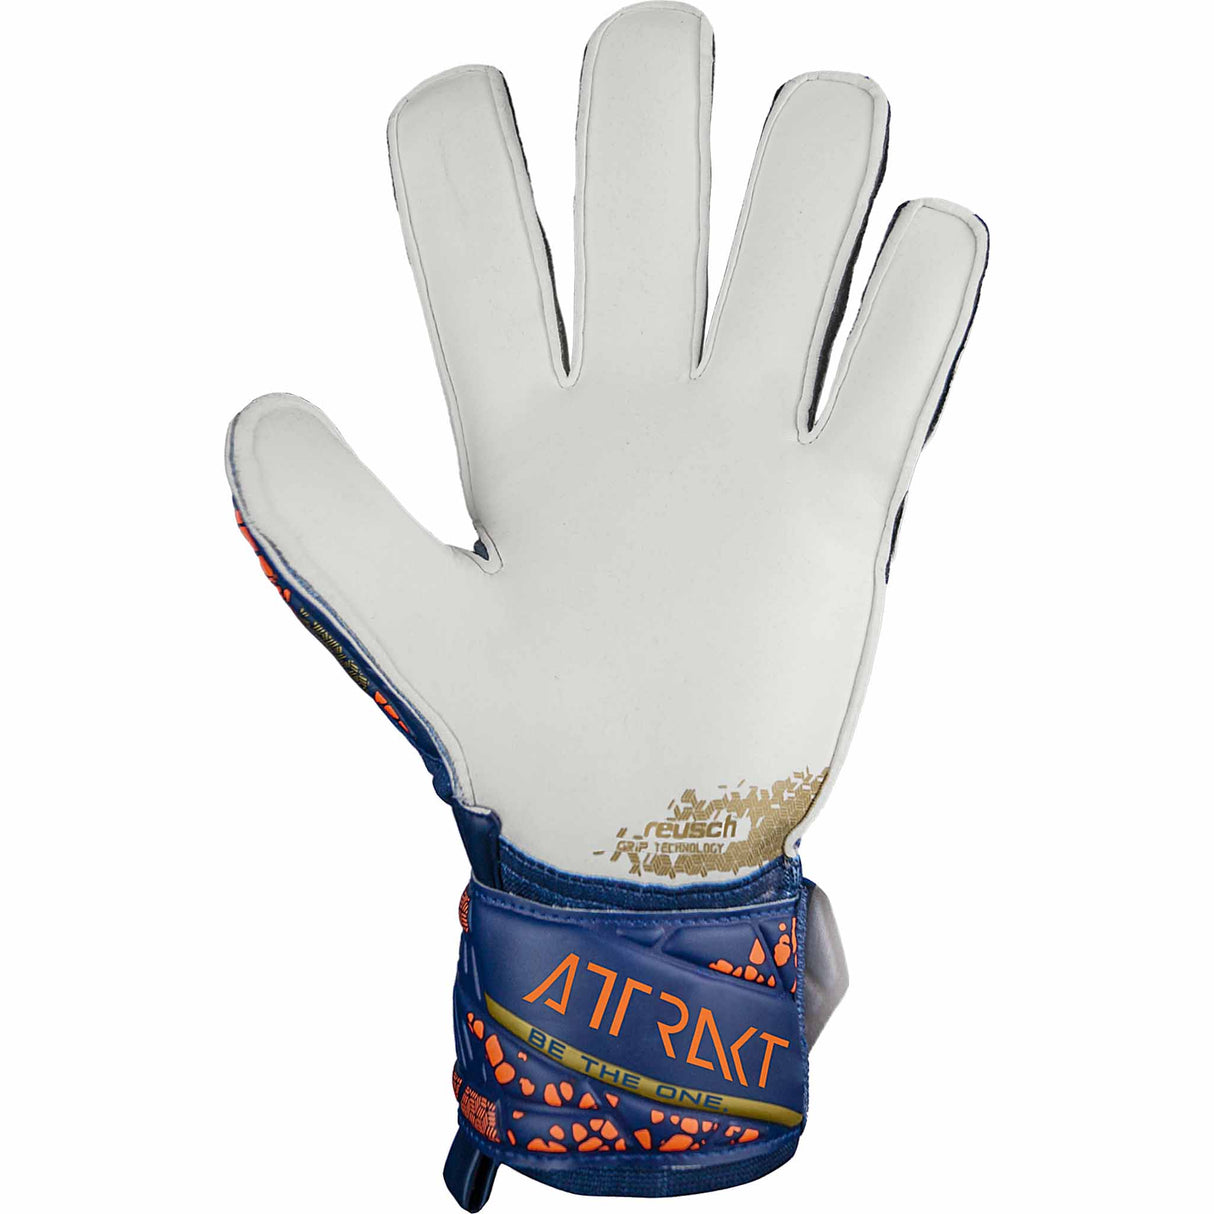 Reusch Attrakt Grip gants de gardien de but - Bleu / Or